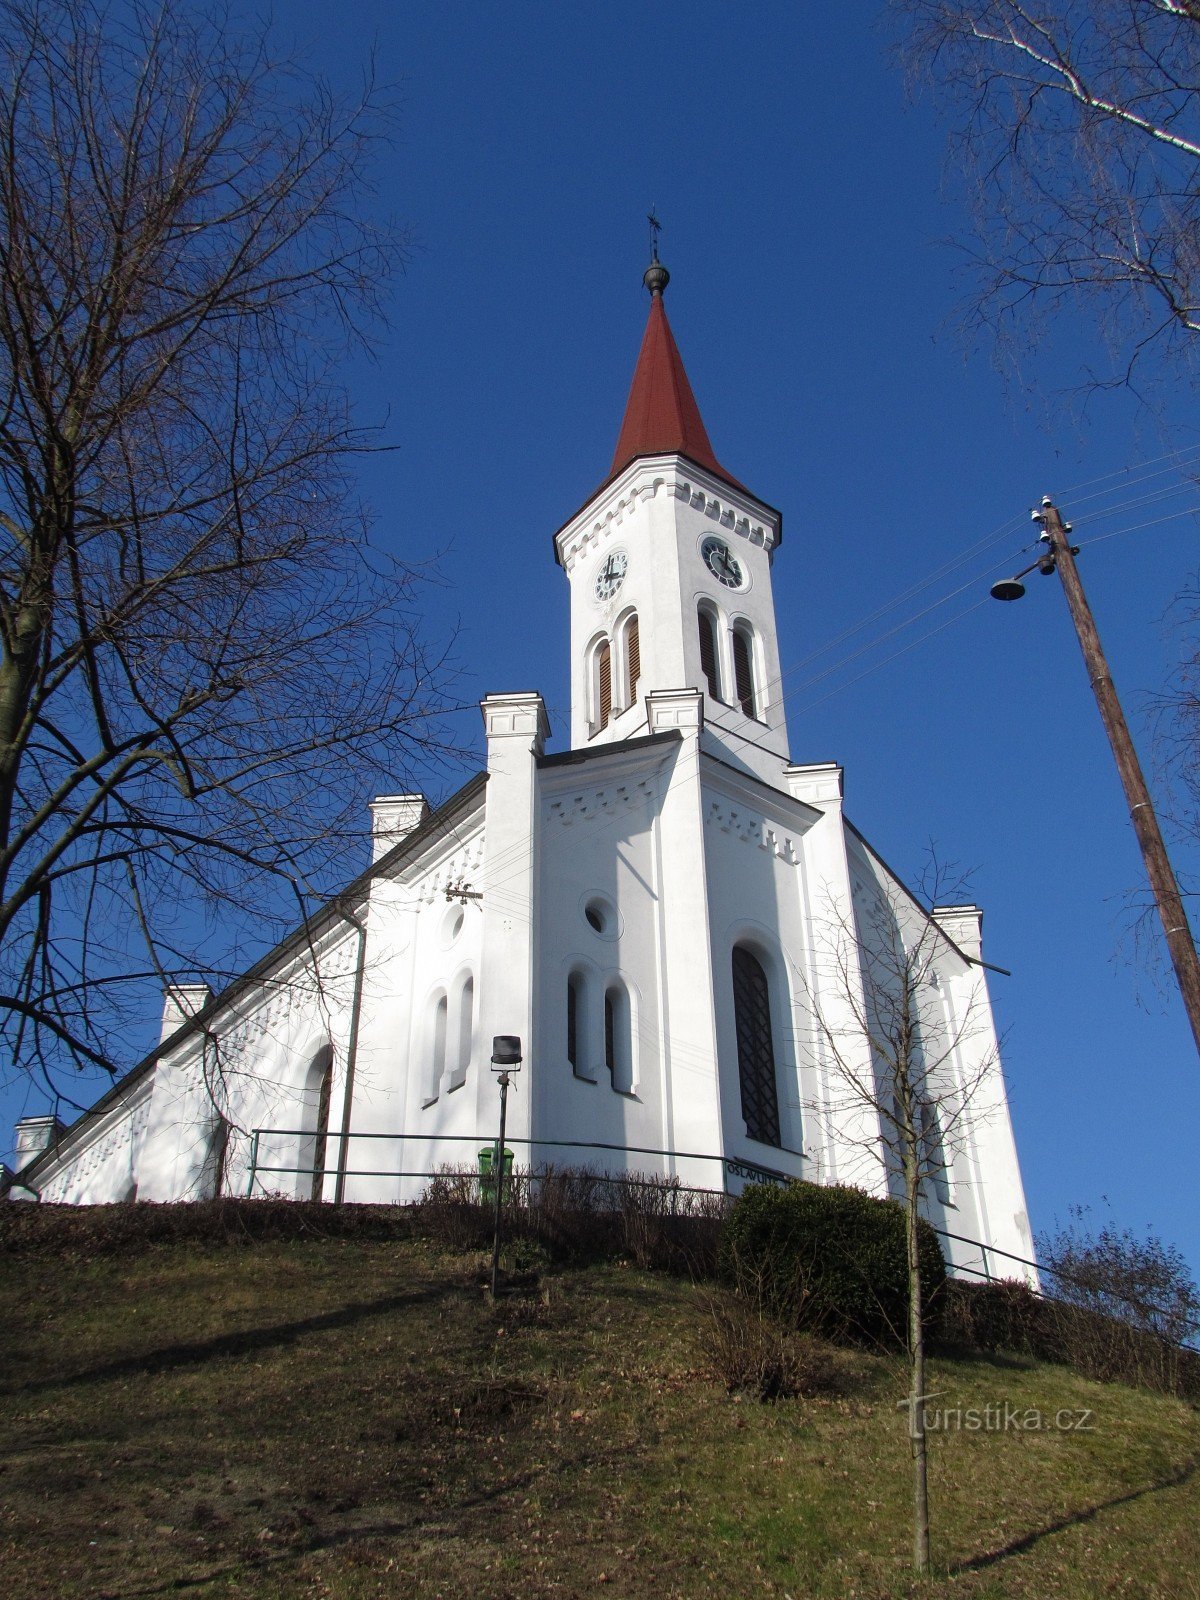 Zádveřice-Raková - 福音派教会